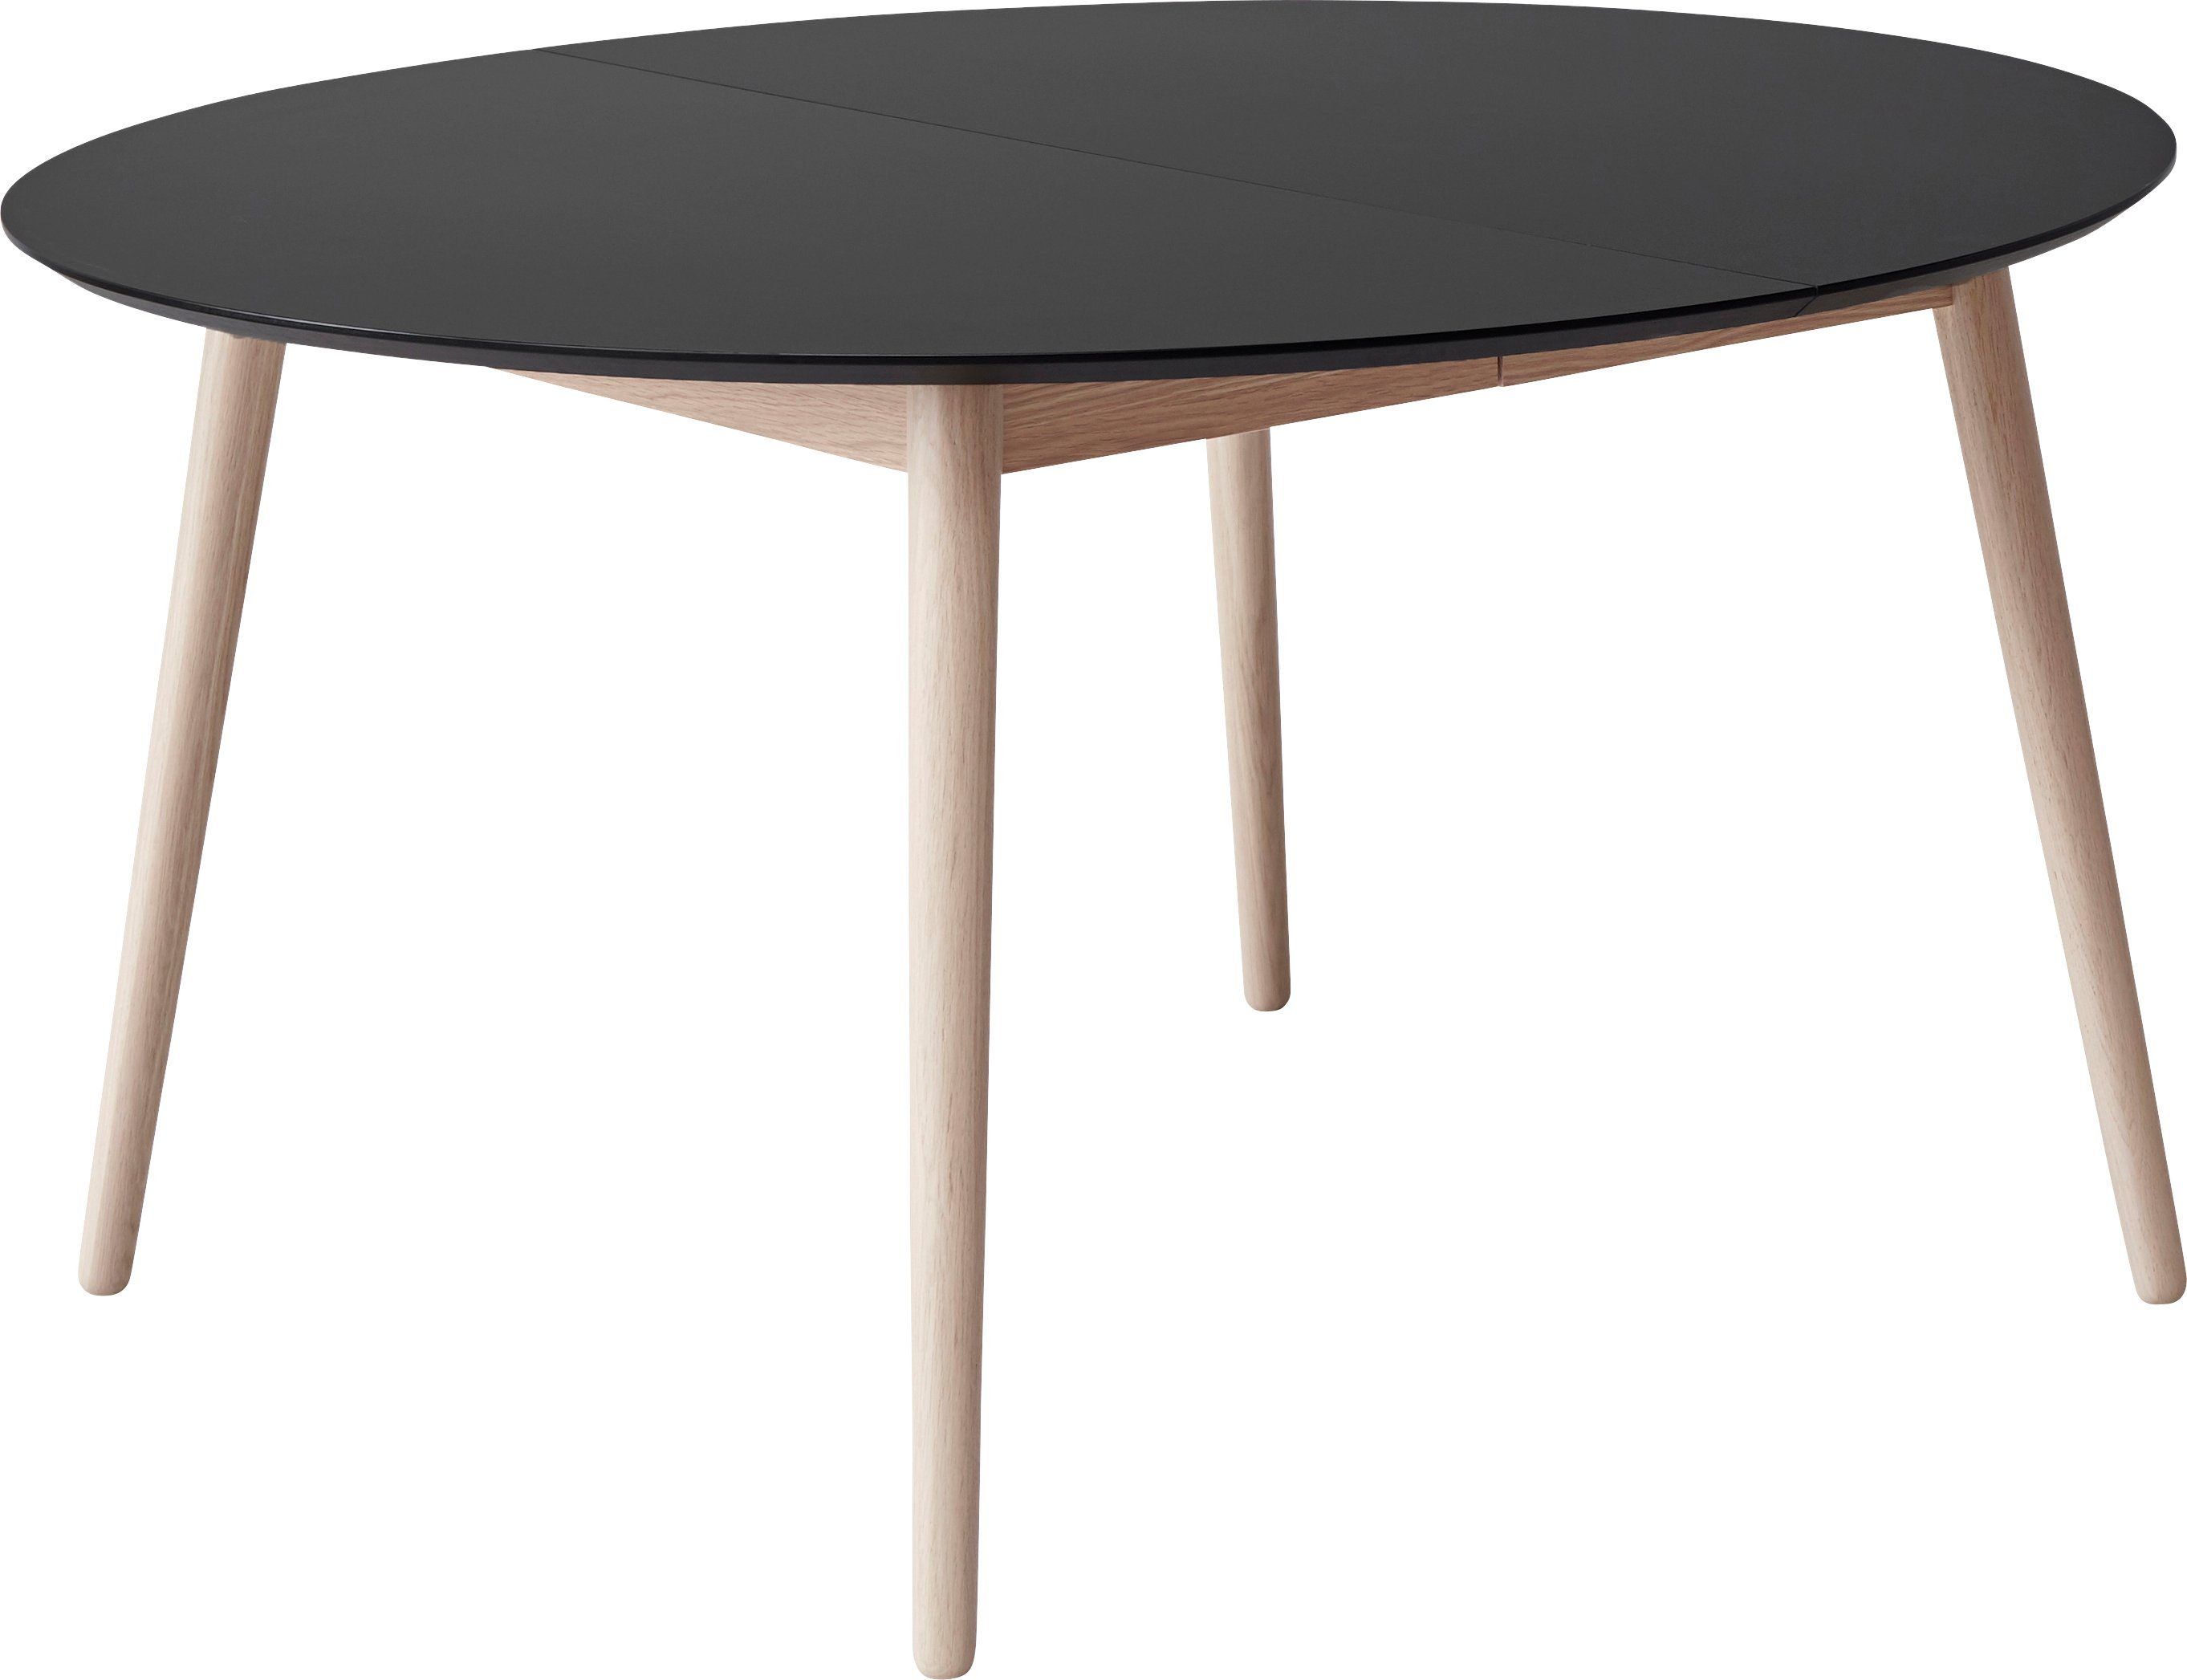 Hammel Furniture Esstisch Meza by Hammel, Ø135(231) cm, runde Tischplatte aus MDF/Laminat, Massivholzgestell Schwarz | Esstische